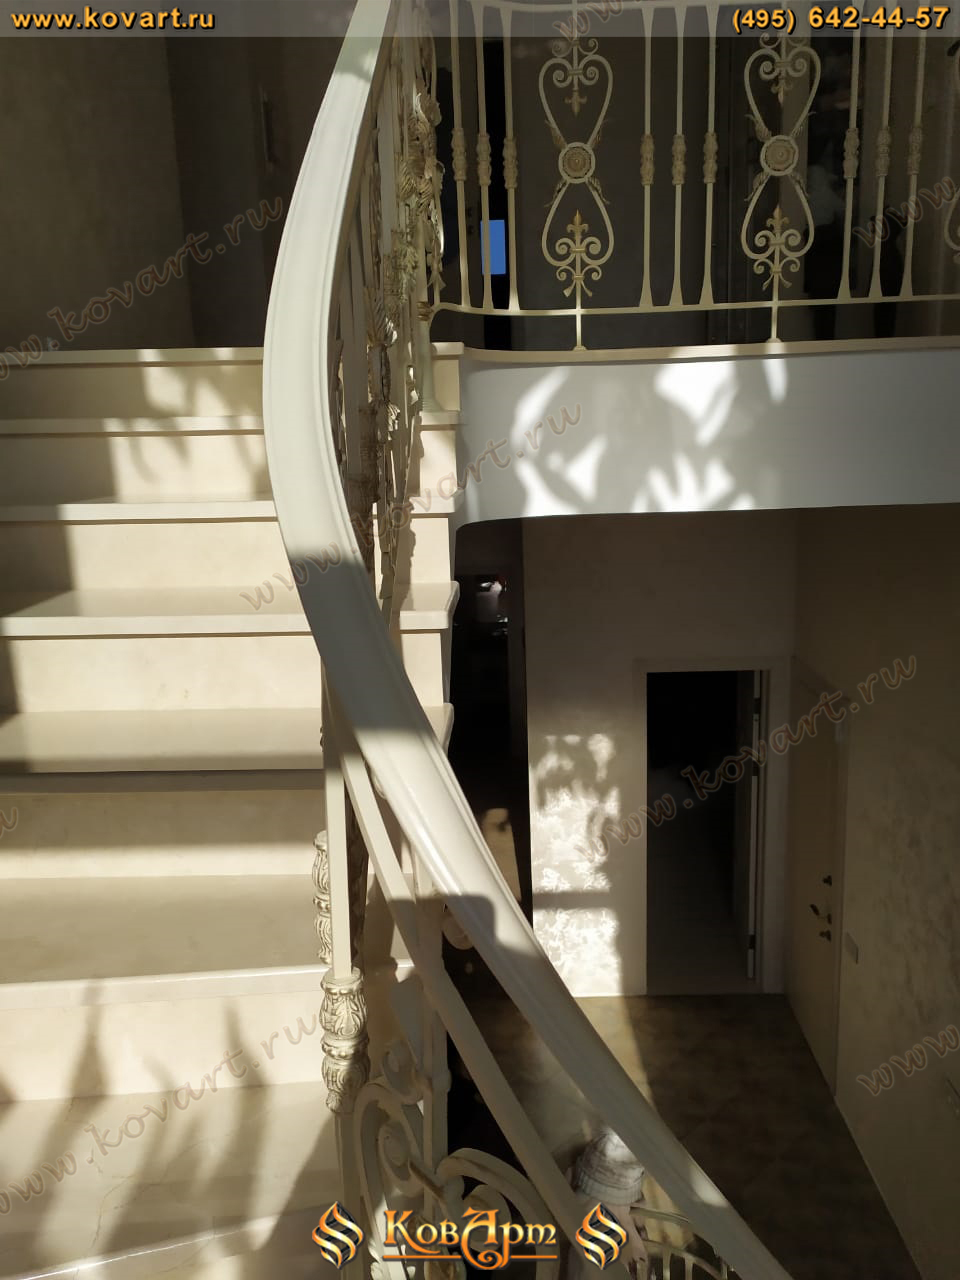 Винтовая лестница с коваными перилами белого цвета Код: КЛ-69/64